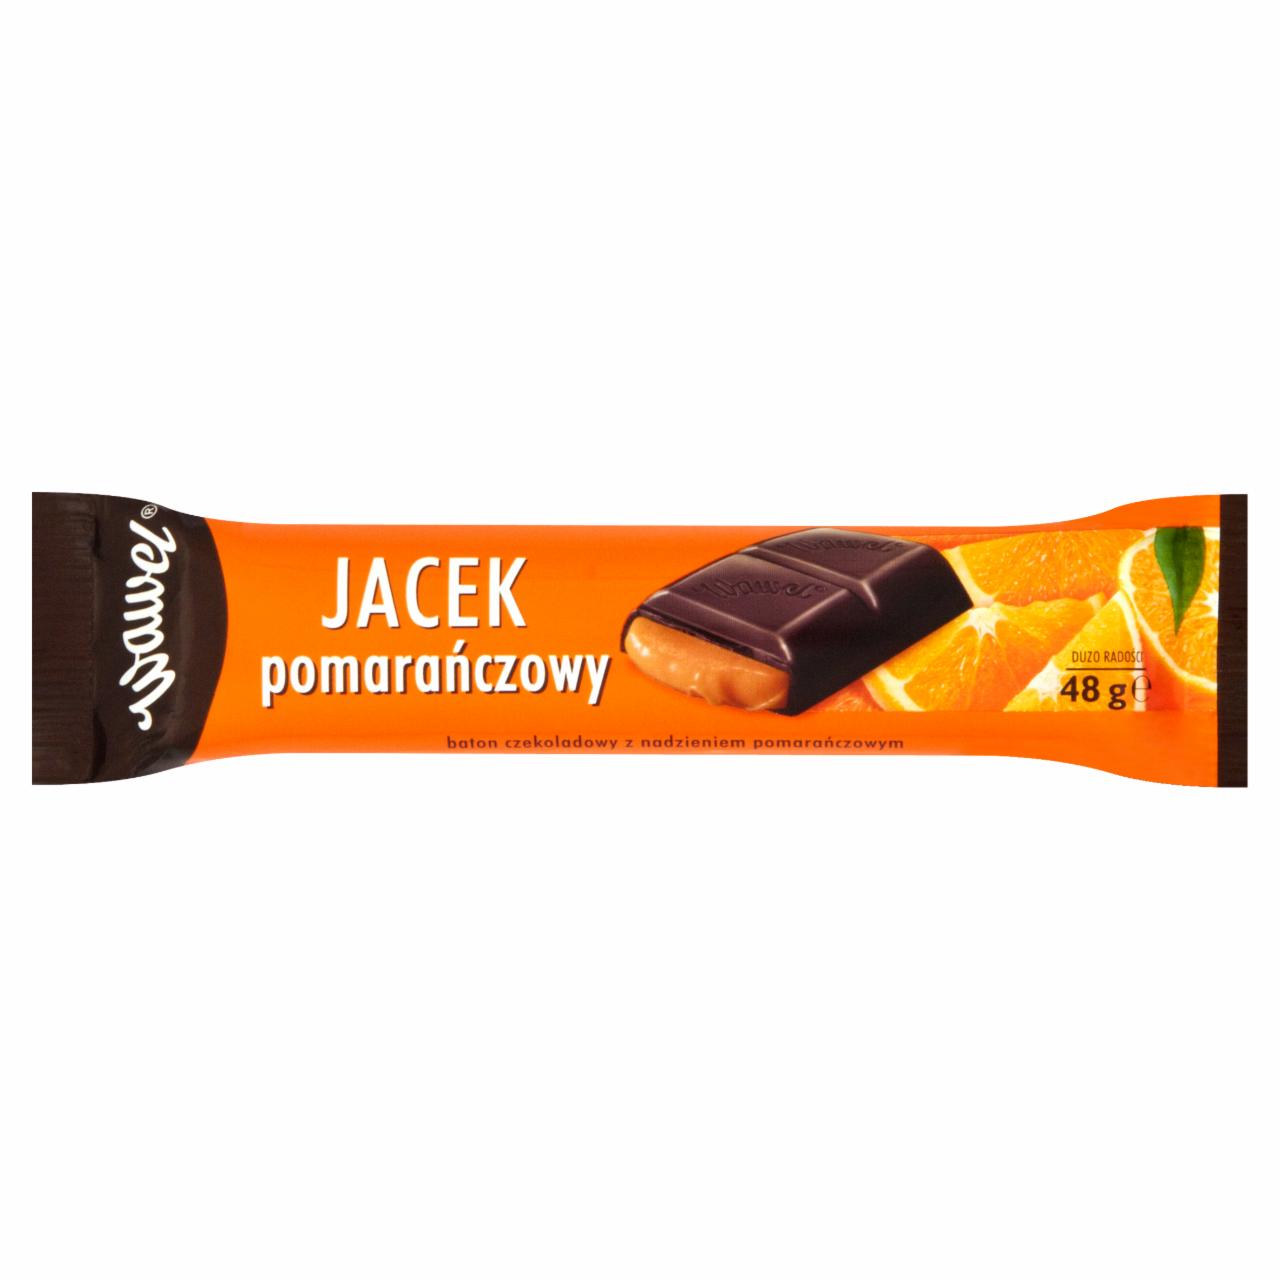 Zdjęcia - Wawel Jacek pomarańczowy Baton czekoladowy z nadzieniem pomarańczowym 48 g